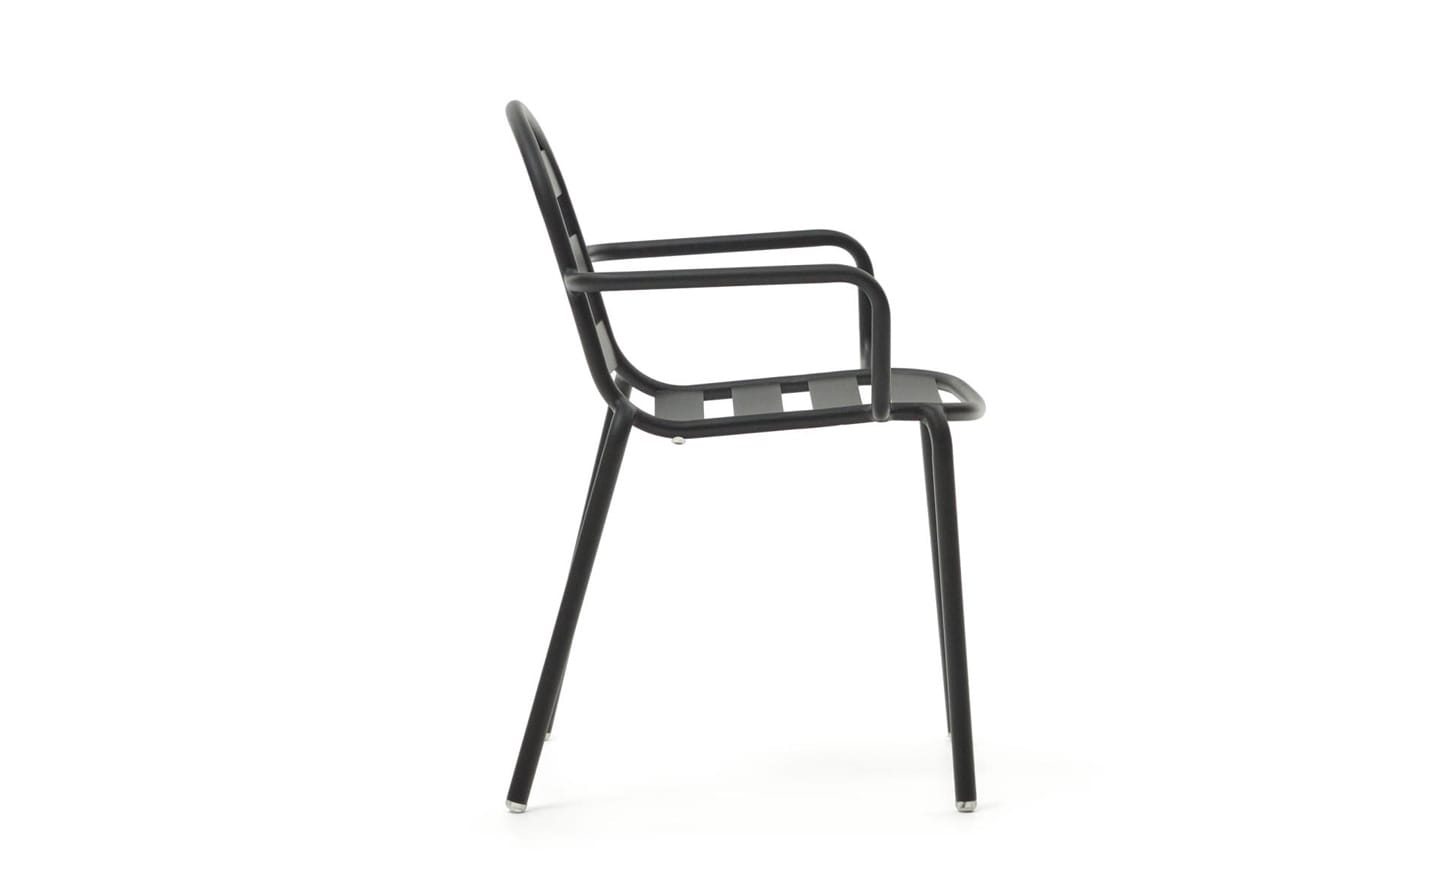 Cadeira de Exterior Joncols Alumínio Cinza com design exclusivo inspirado em seixos - J0600004NN02 | Moveistore